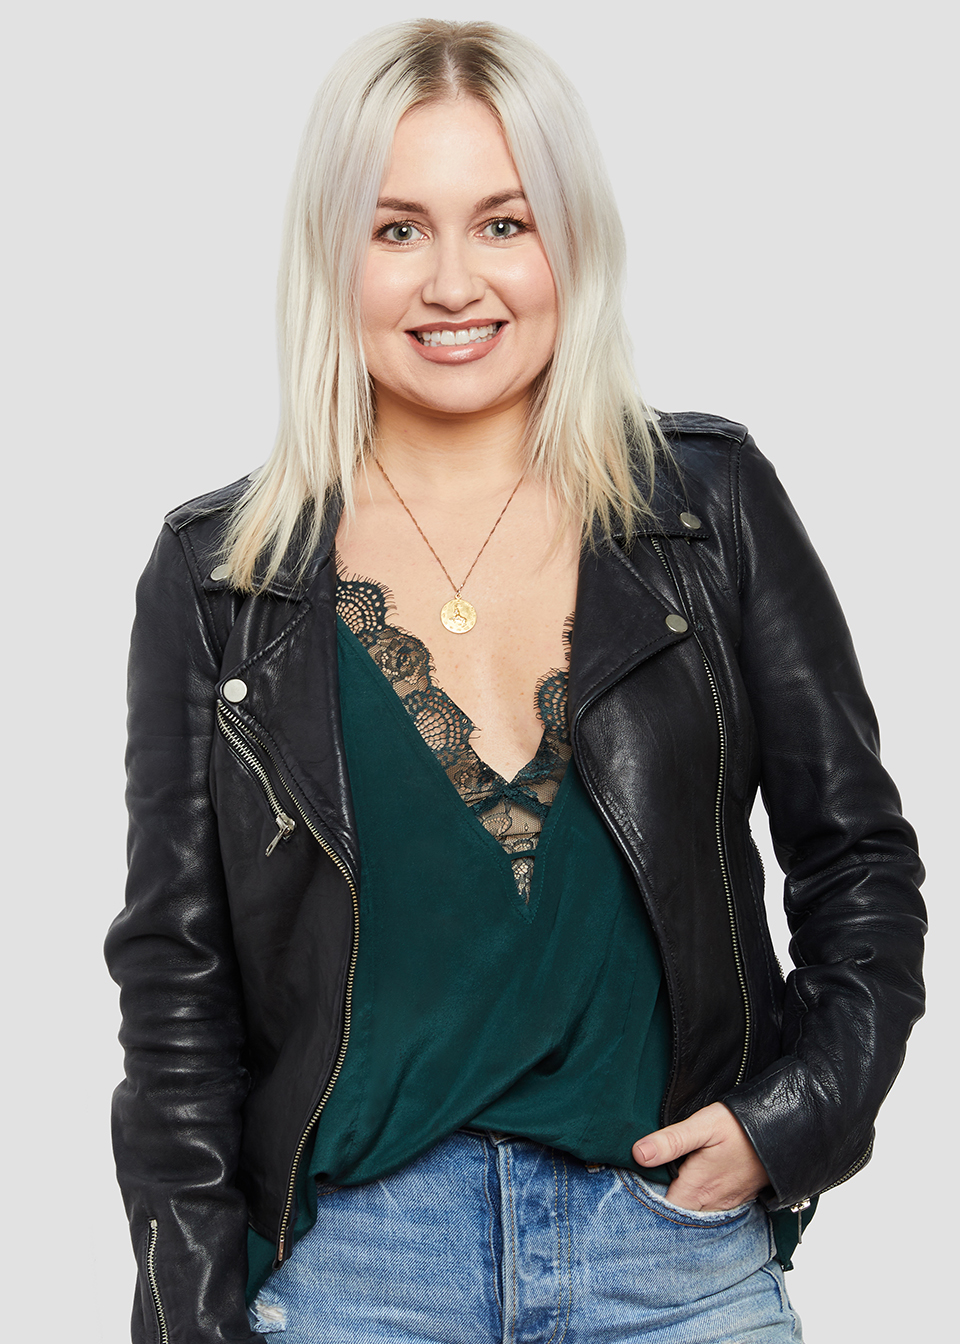 Jenny Shryock Profile Image